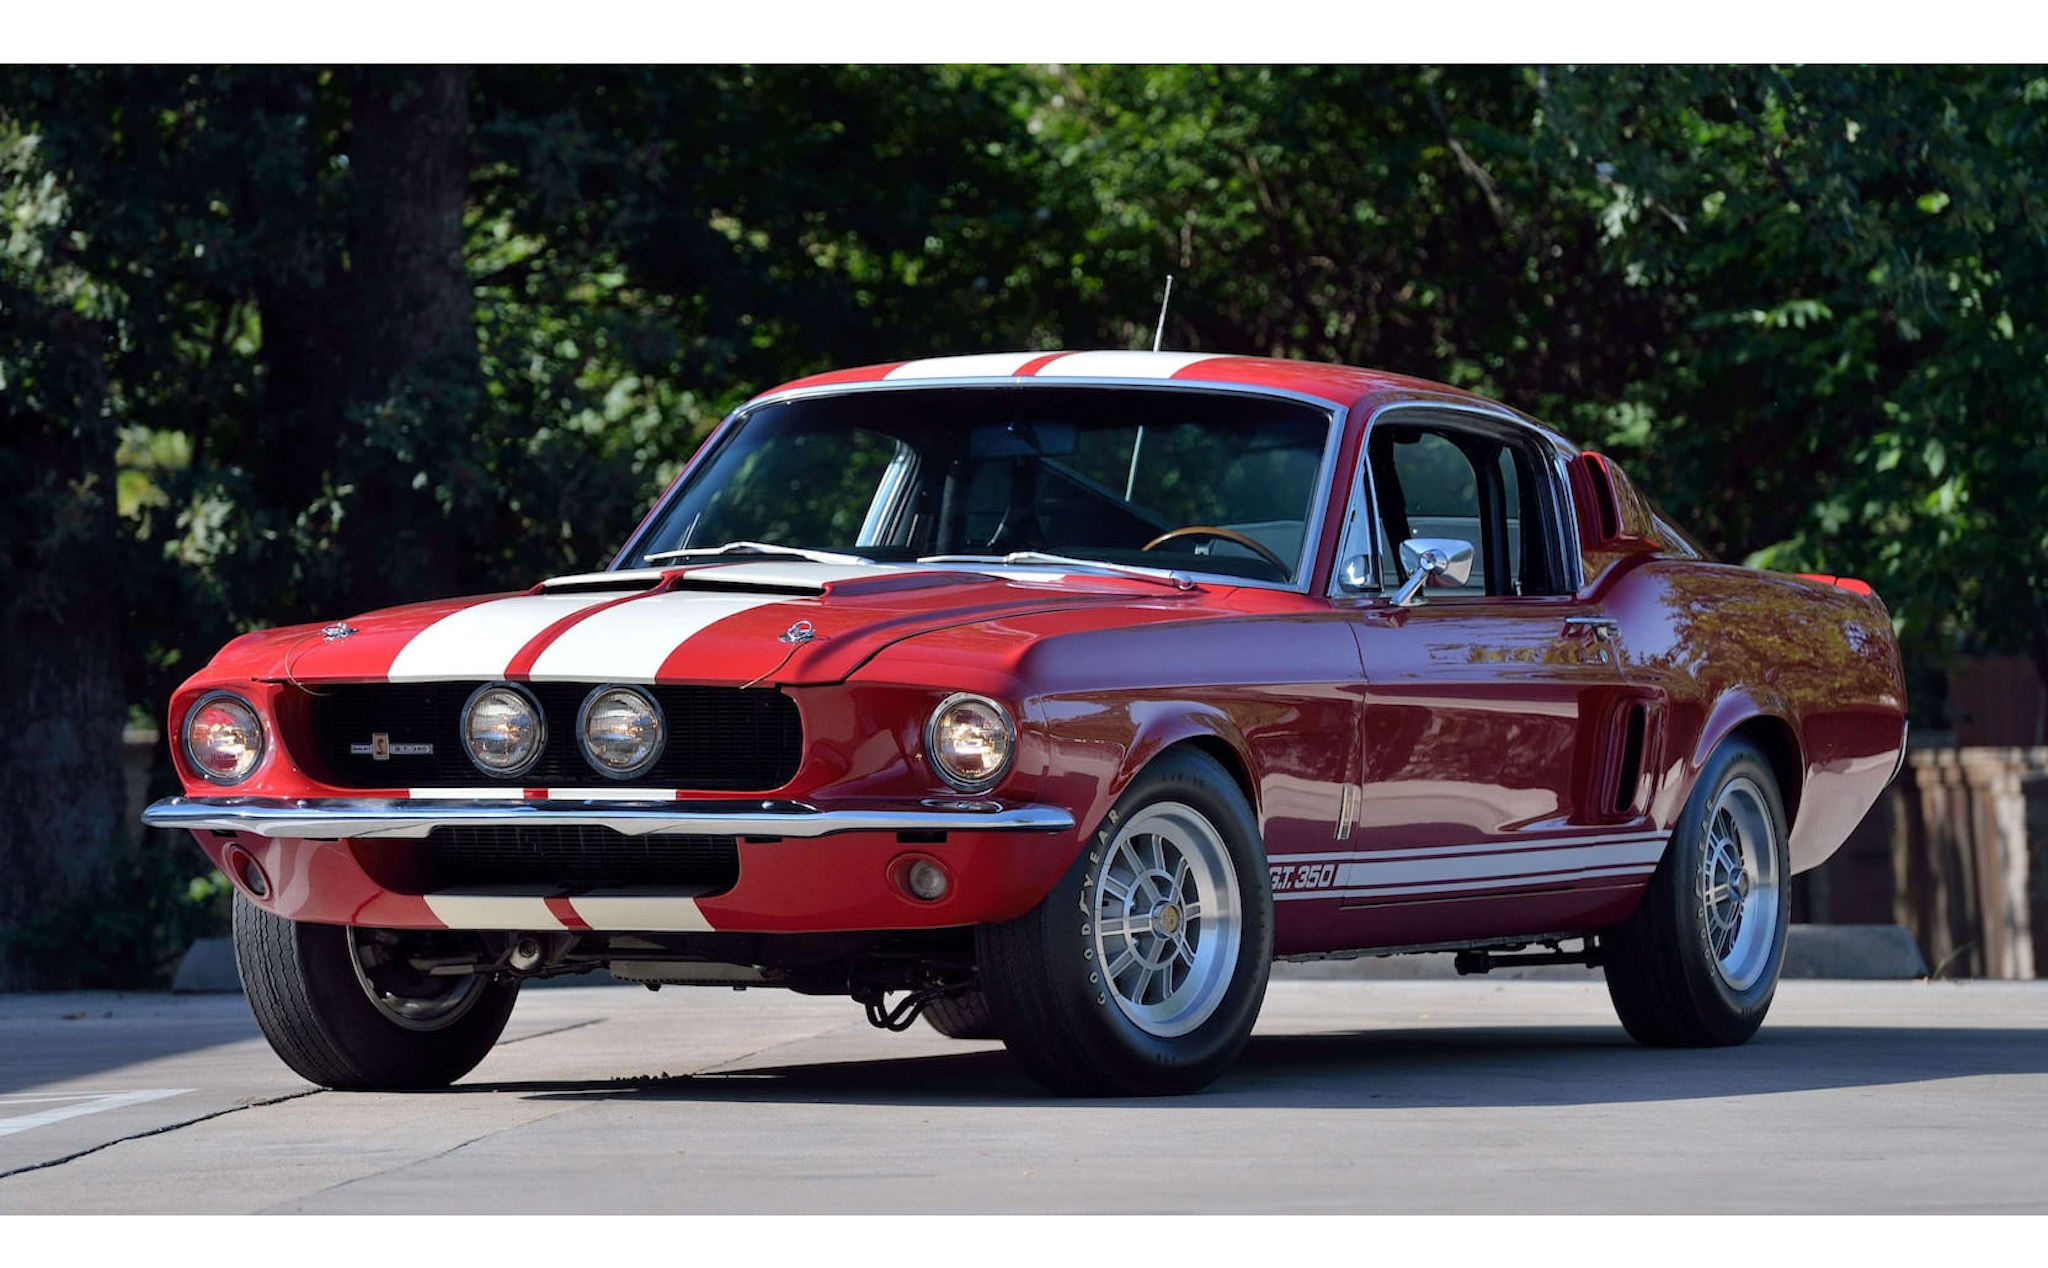 Chiêm ngưỡng Ford Mustang phiên bản Shelby GT350 đời 1967, đúng chất "cơ bắp Mỹ"!